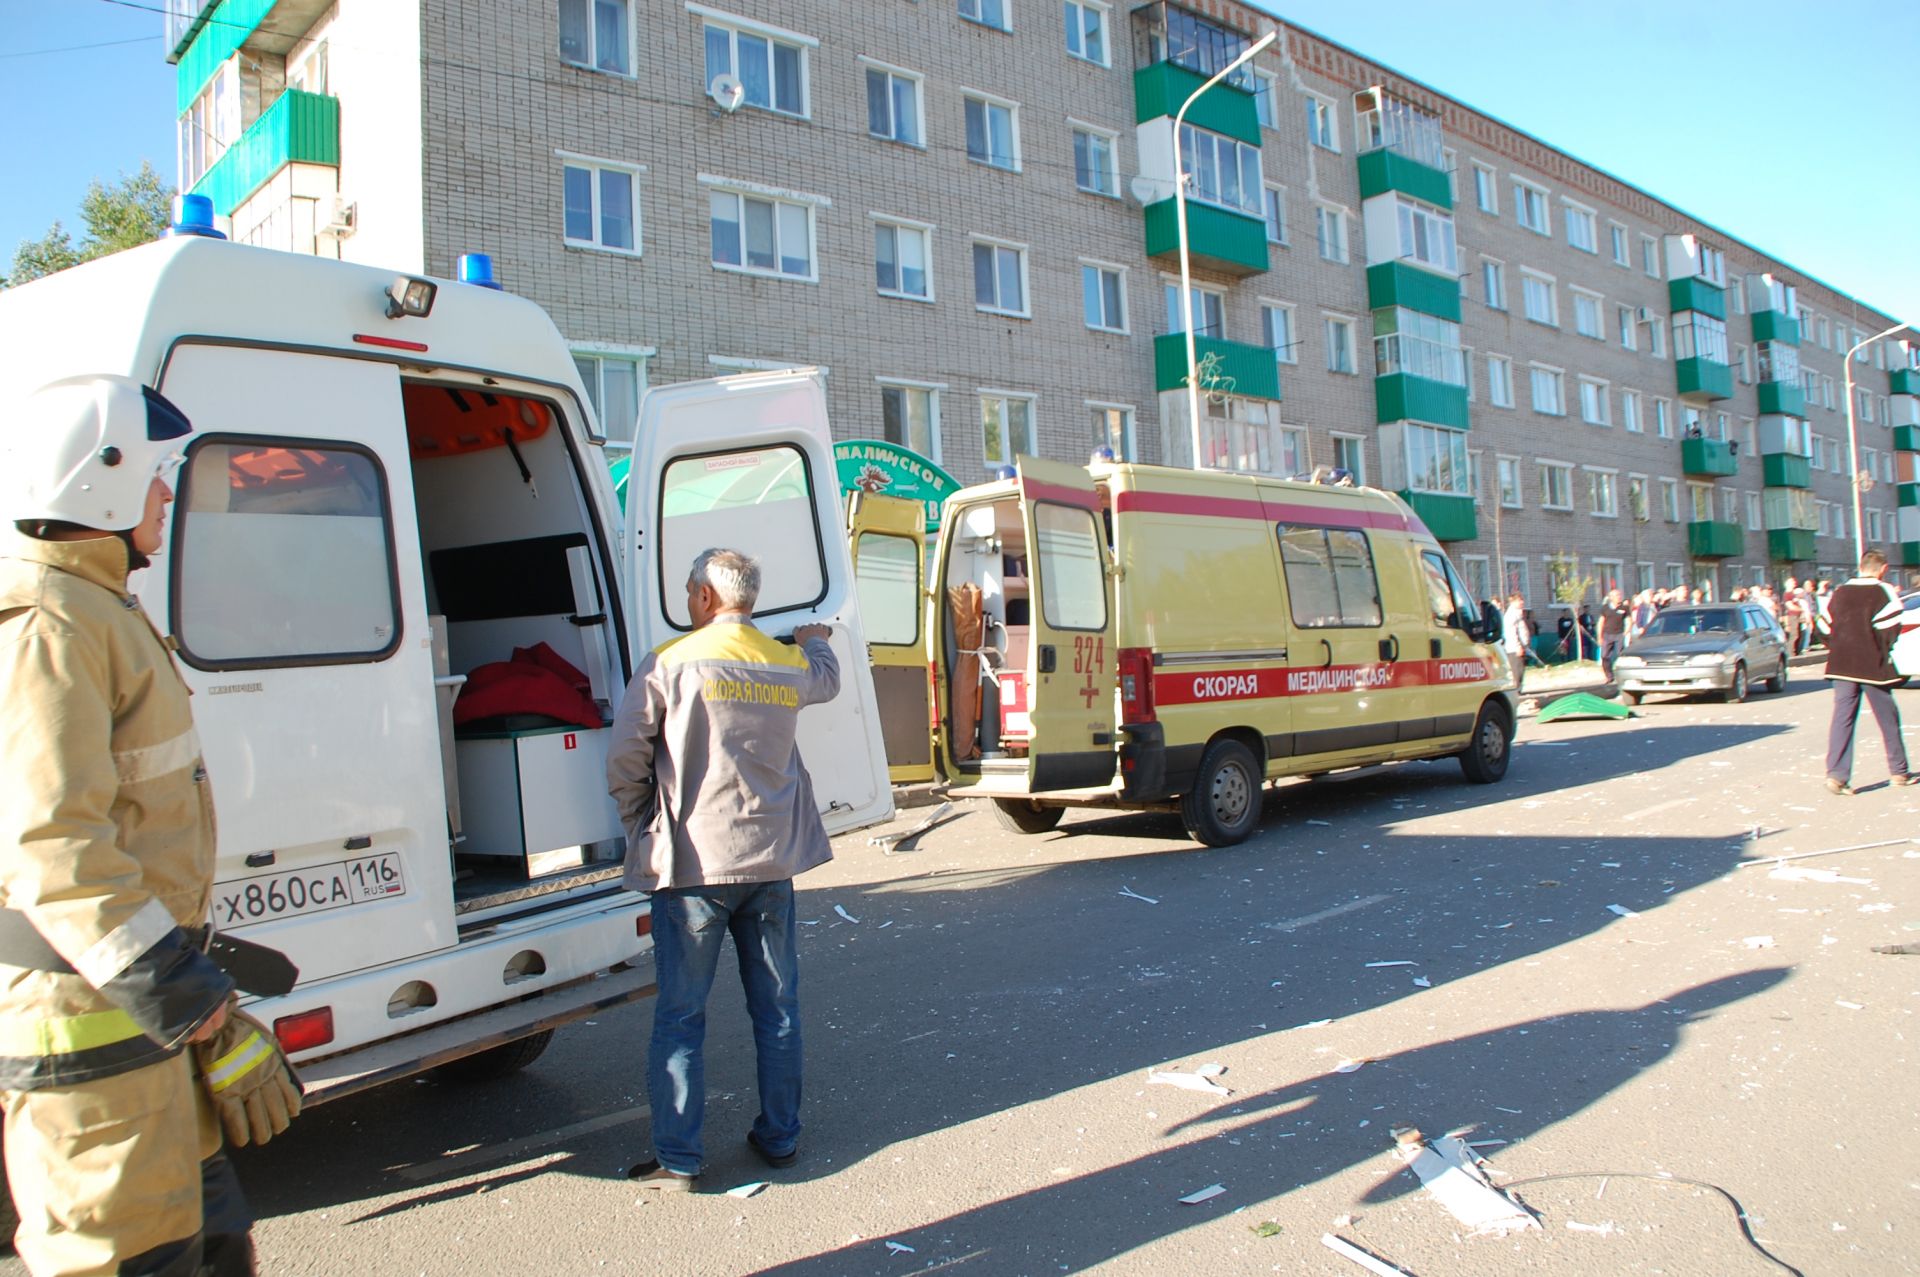 Сегодня, 22 июня, в Заинске по адресу улица Никифорова, дом 71  произошел взрыв на 5 этаже.